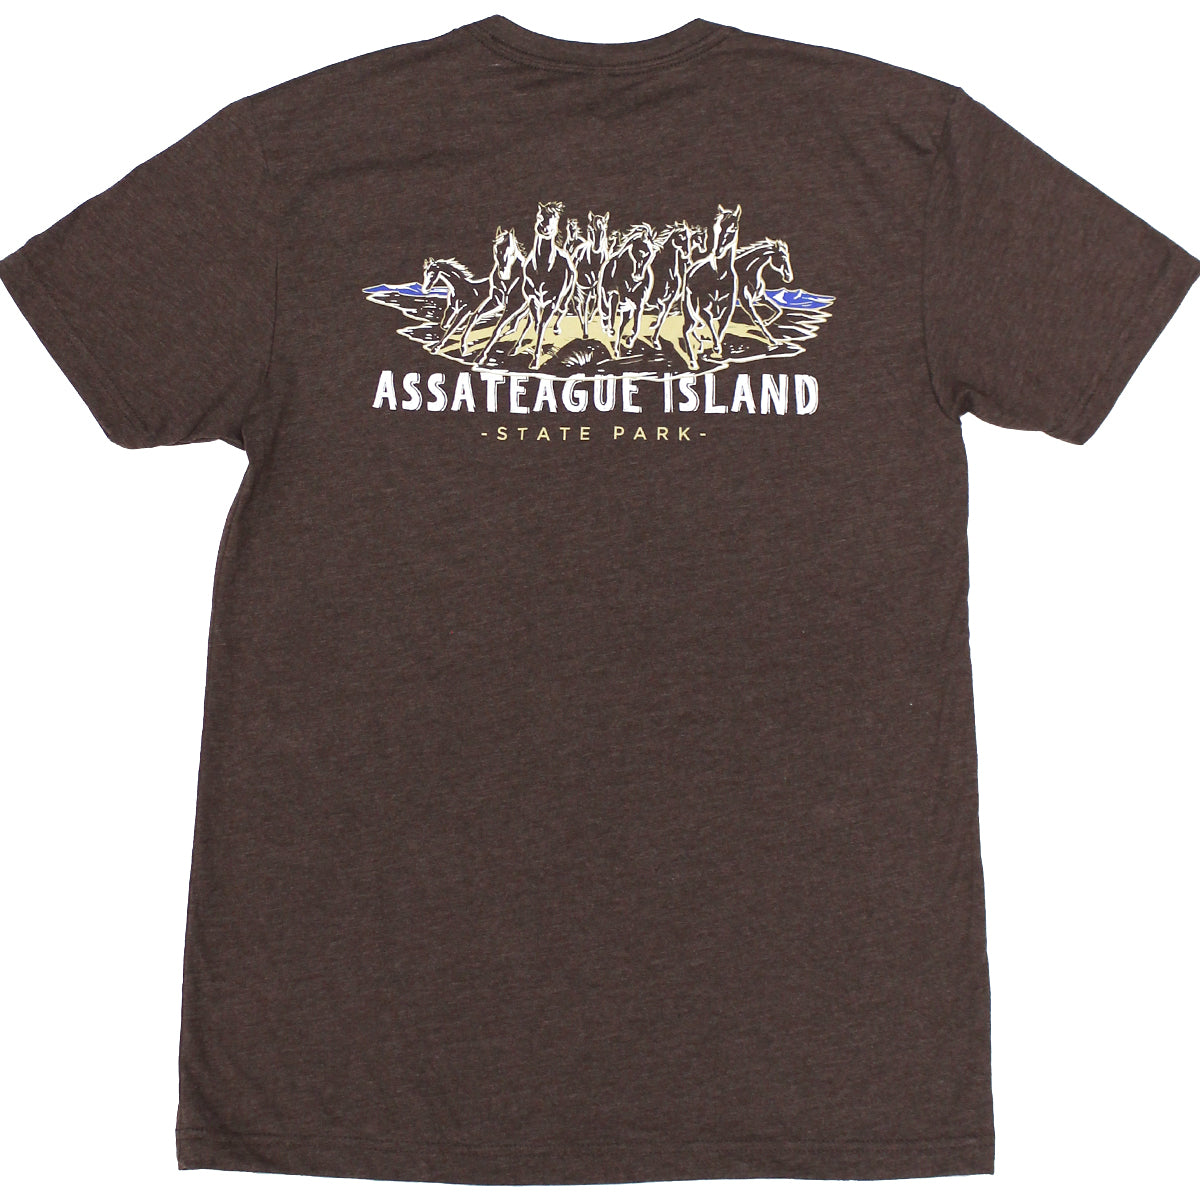 Assateague Island (Espresso) / Shirt - Route One Apparel